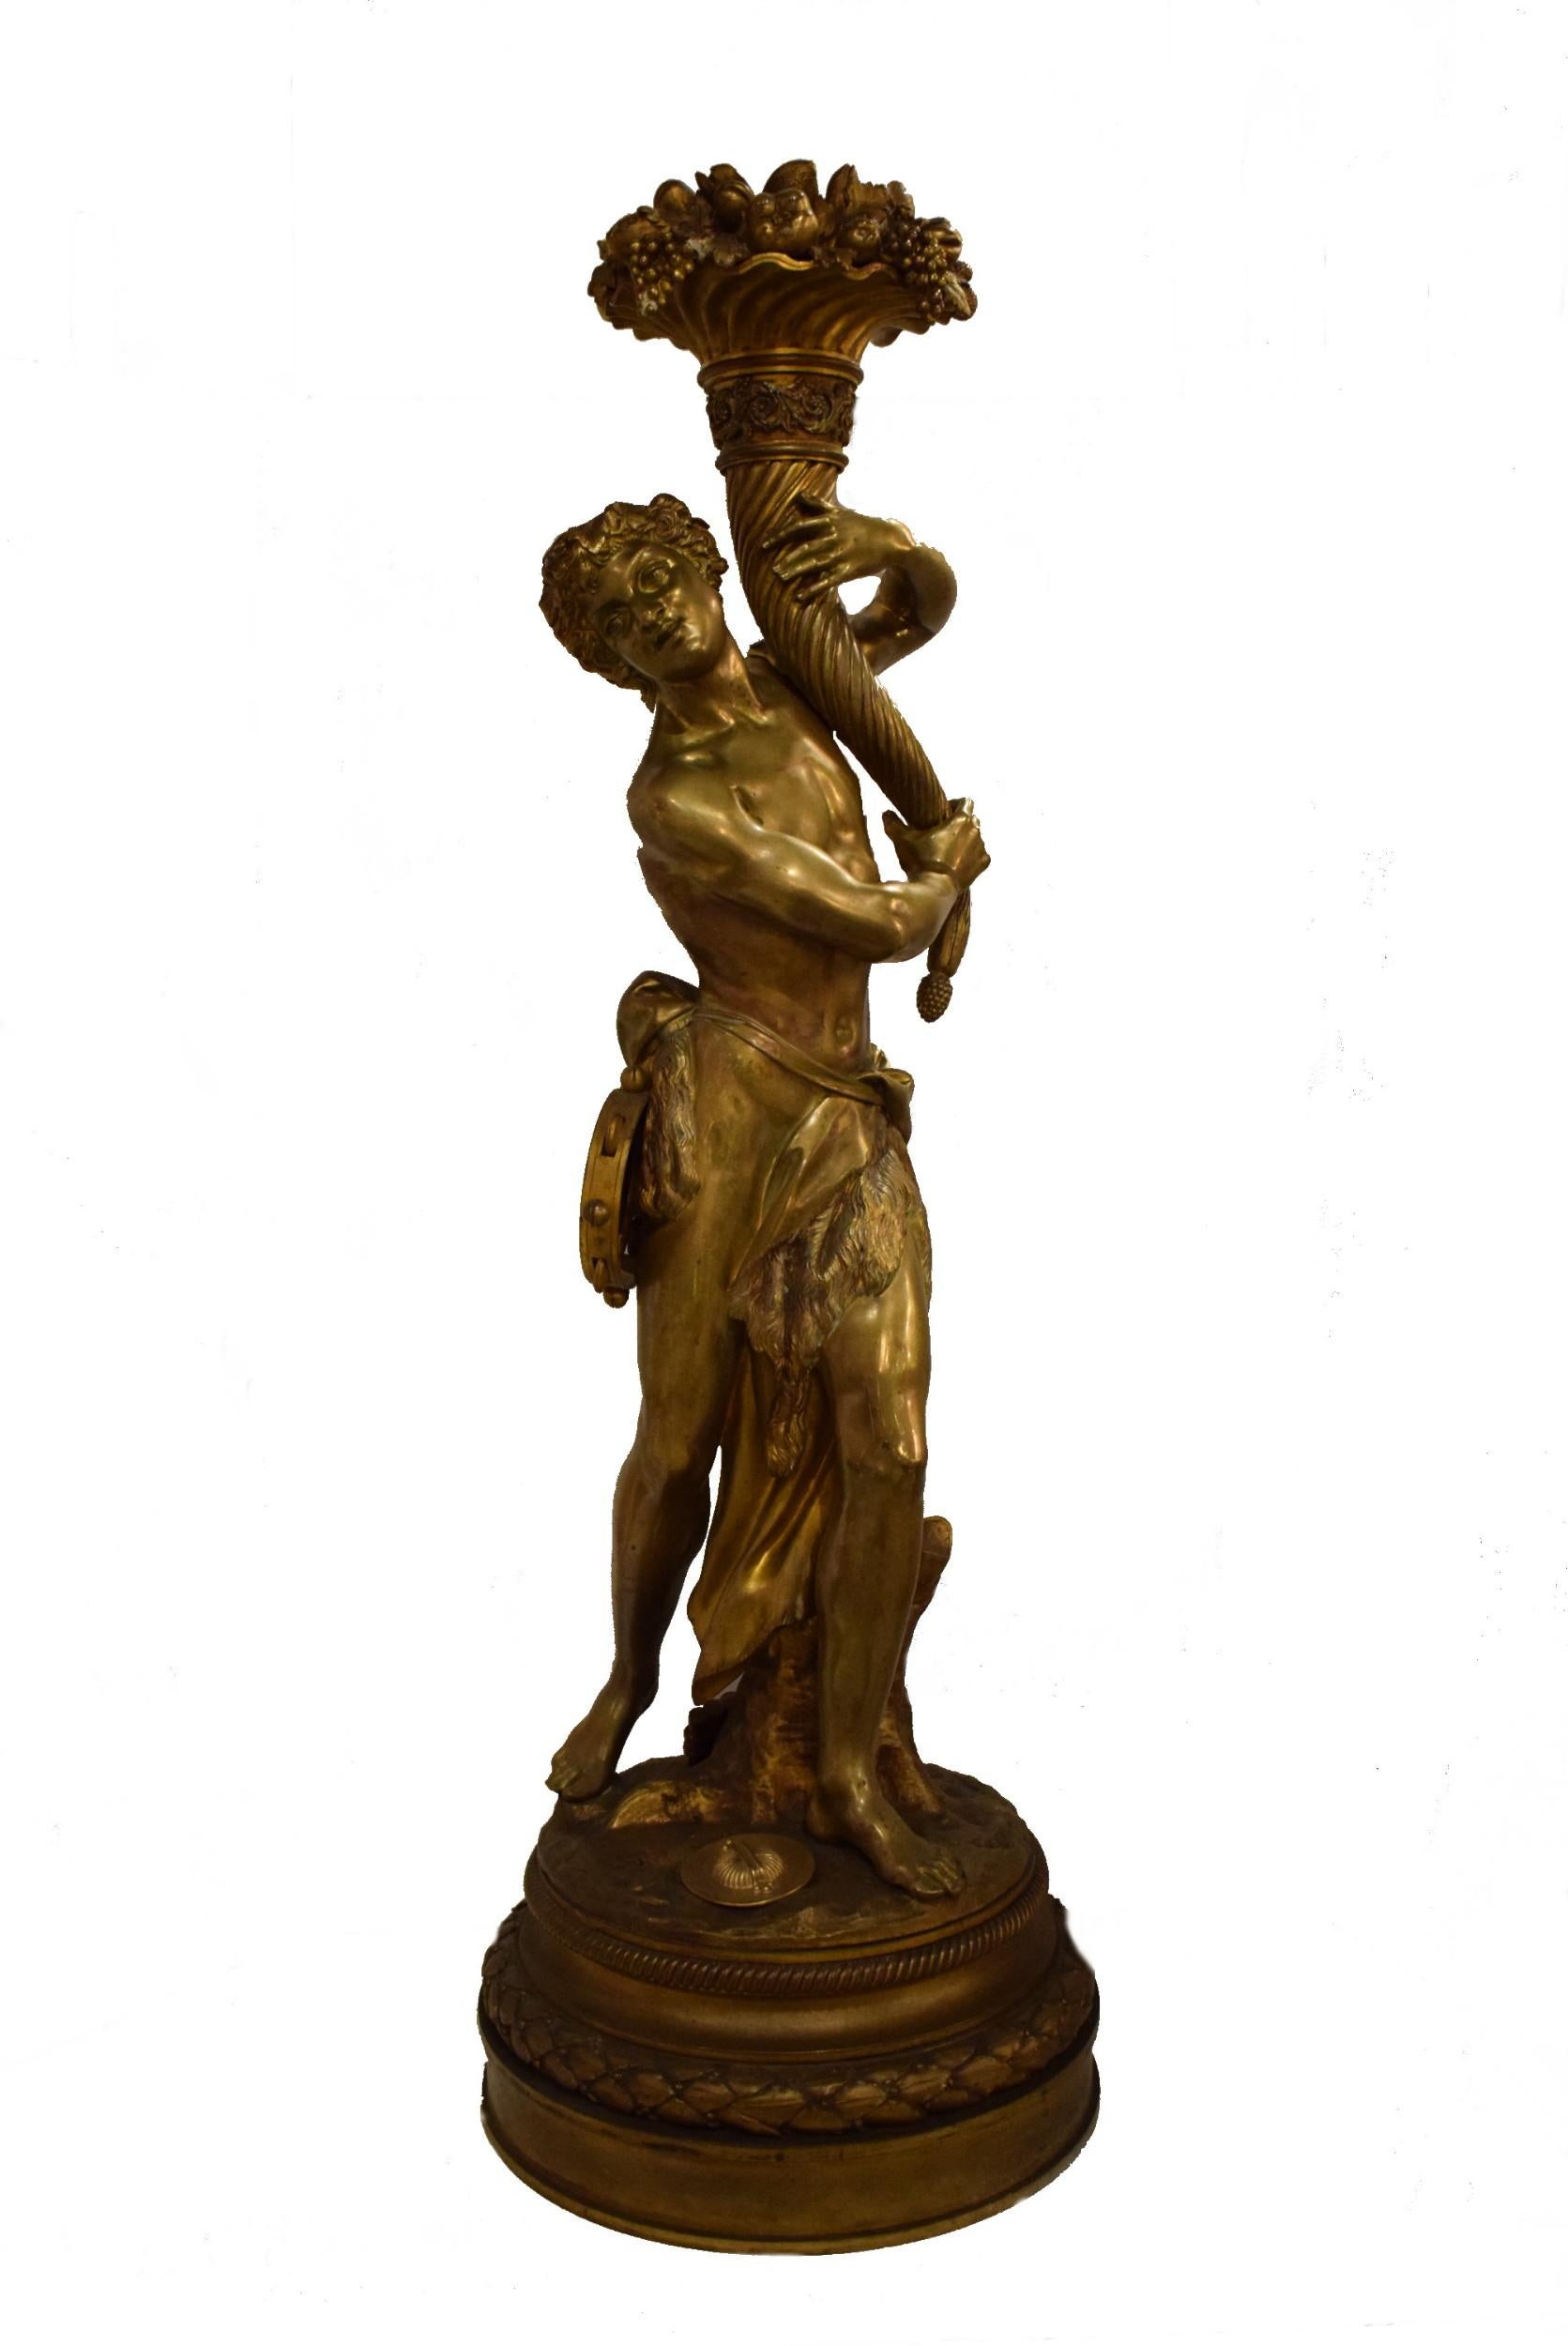 Un superbe pied de lampe figuratif en bronze doré, signé Clodion, 1775. France.
Dimensions : Hauteur 39